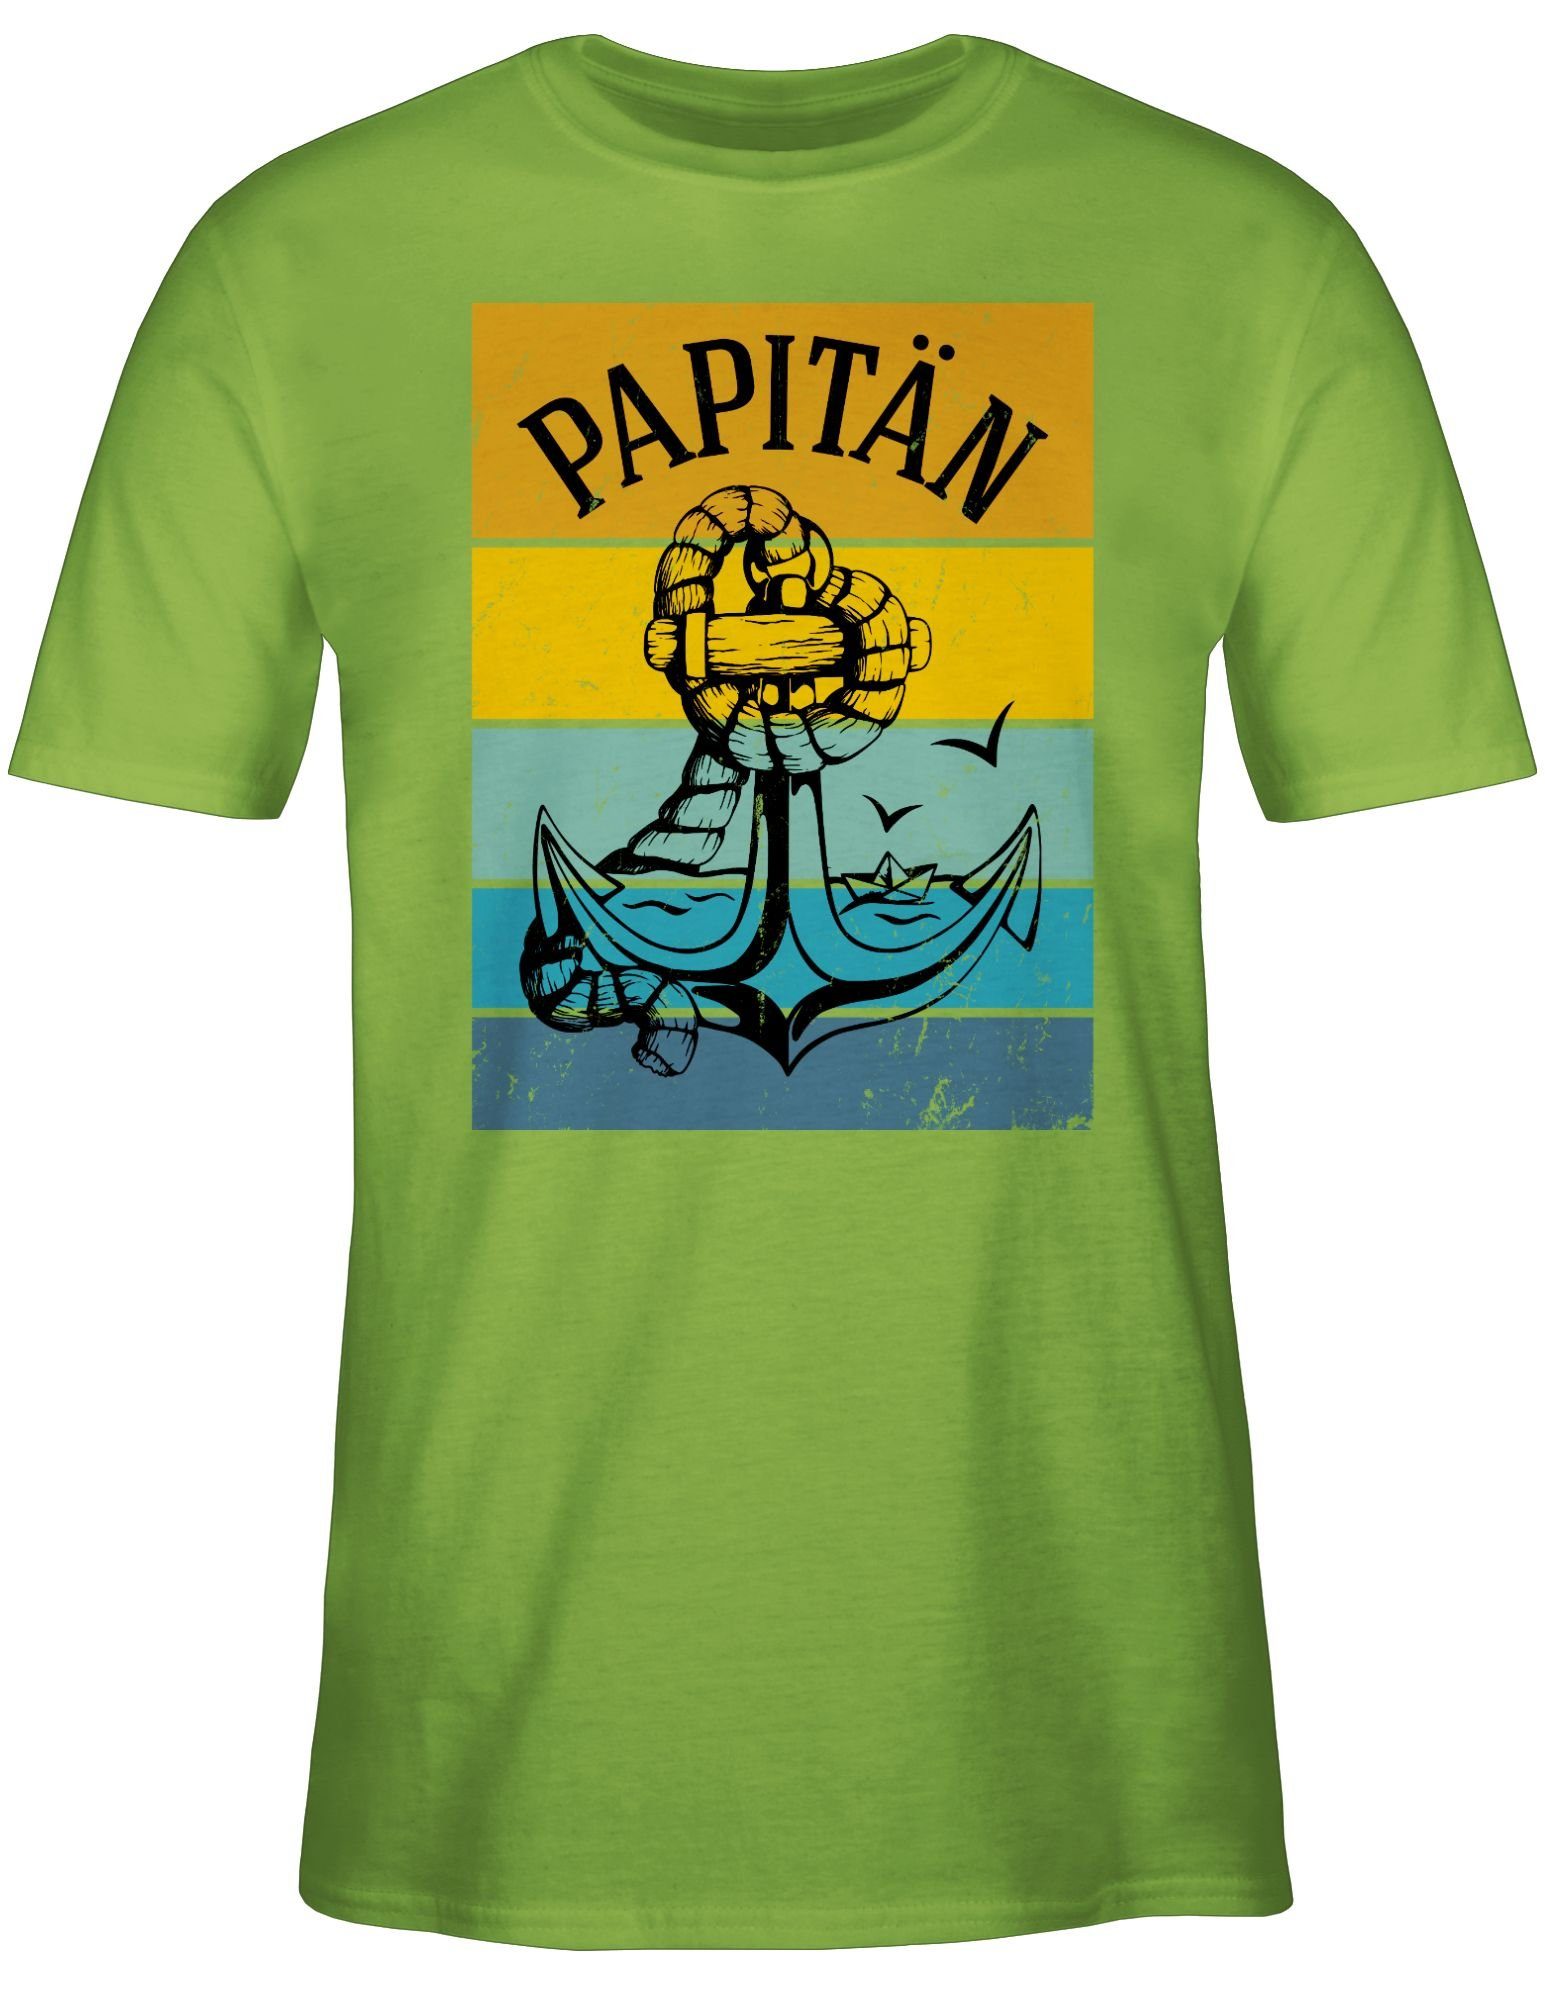 T-Shirt für Anker Hellgrün Papitän Vatertag 02 Shirtracer Geschenk Papa